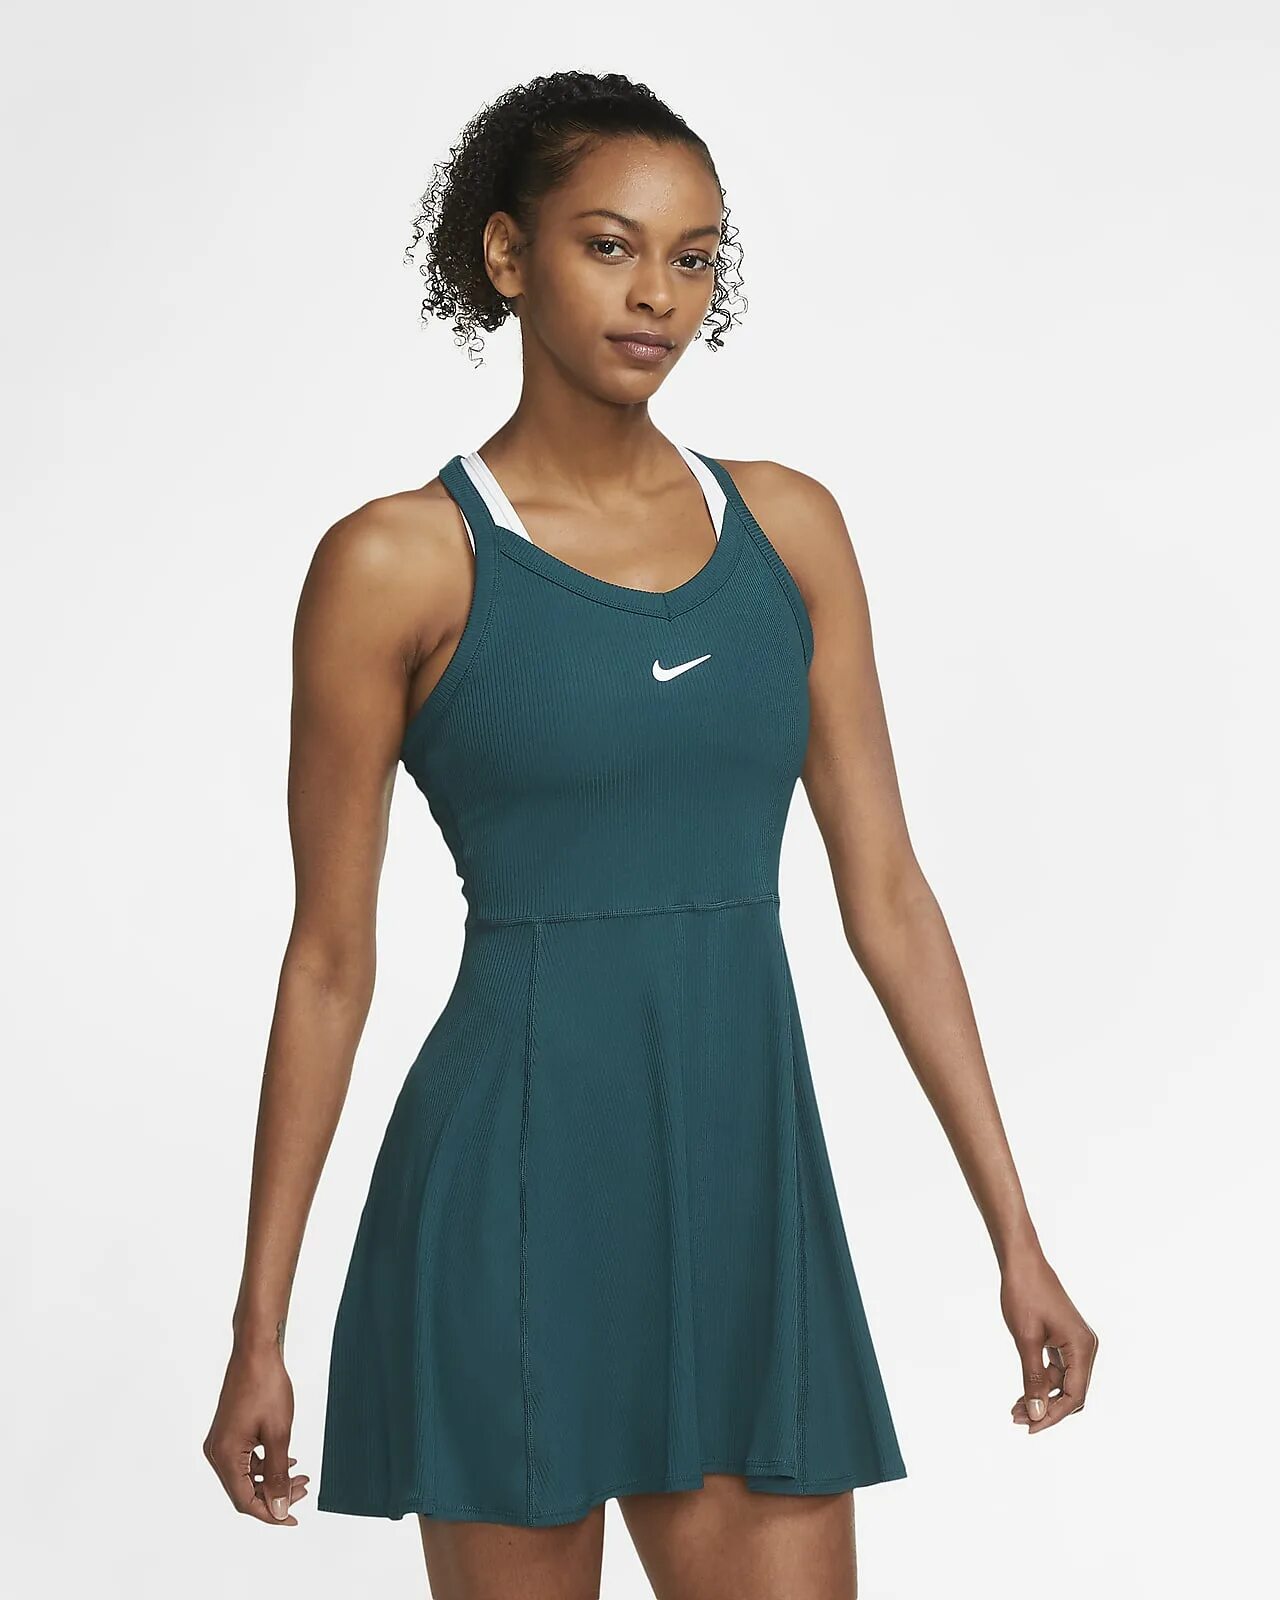 Платье найк. Теннисное платье Nike-Court. Nike Dri Fit теннисные. Nike Court теннисное платье обтягивающее. Теннисное платье женское Nike Court Dri-Fit advantage Club Dress - Noble Red/Black.